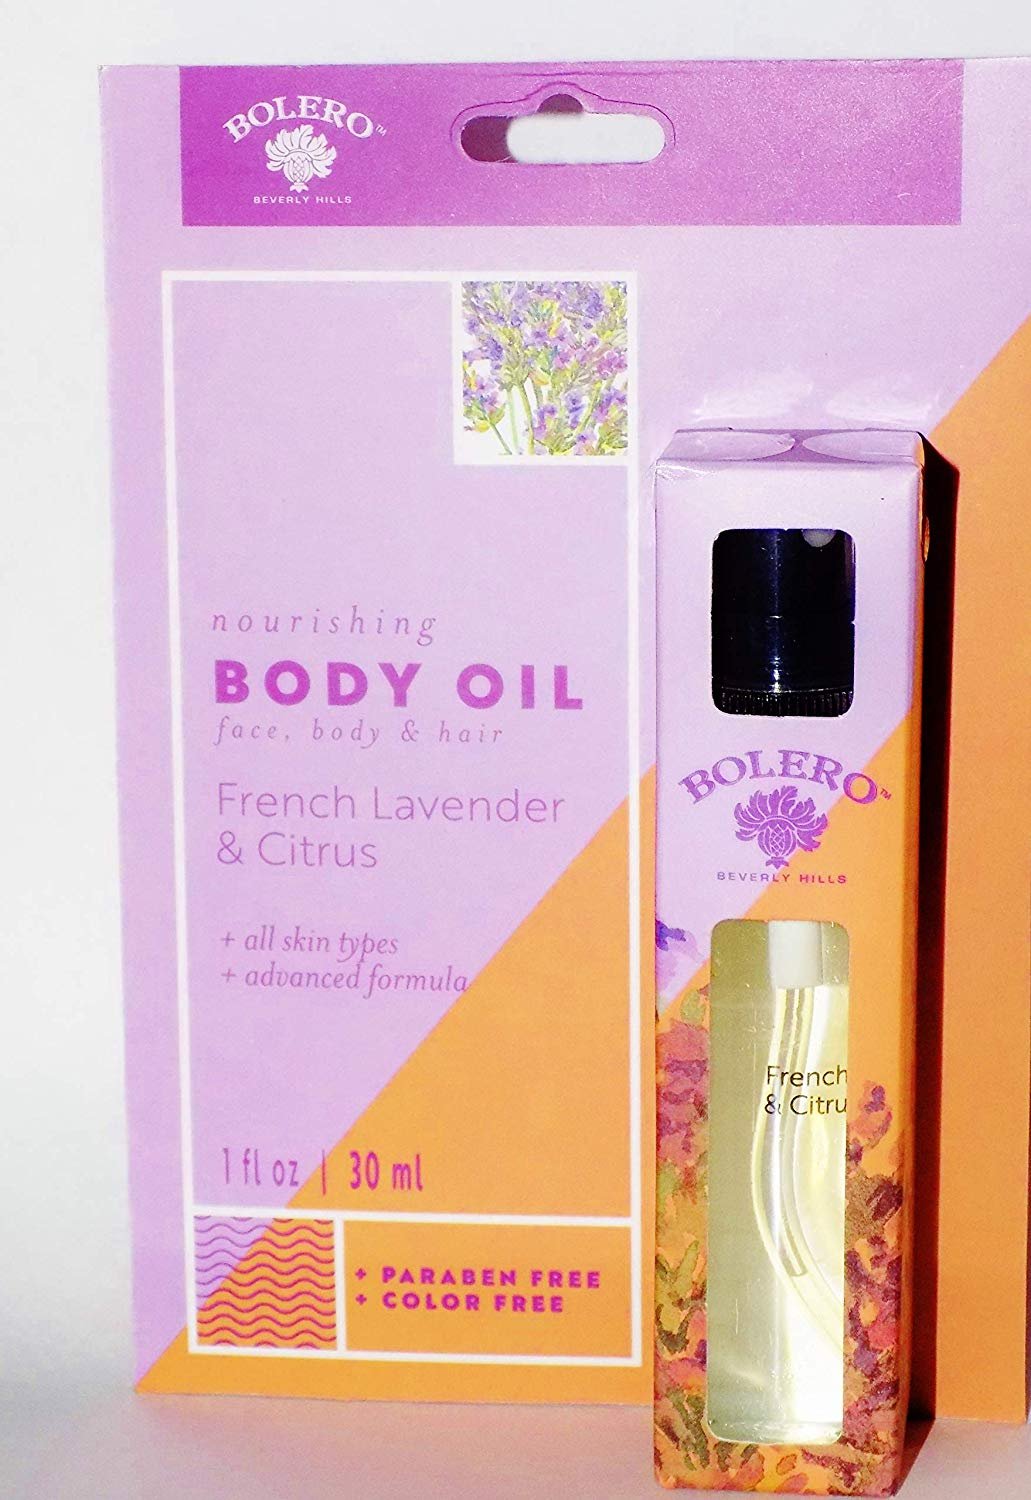 Bolero Body Oil For Face Body & Hair, French Lavender & Citrus